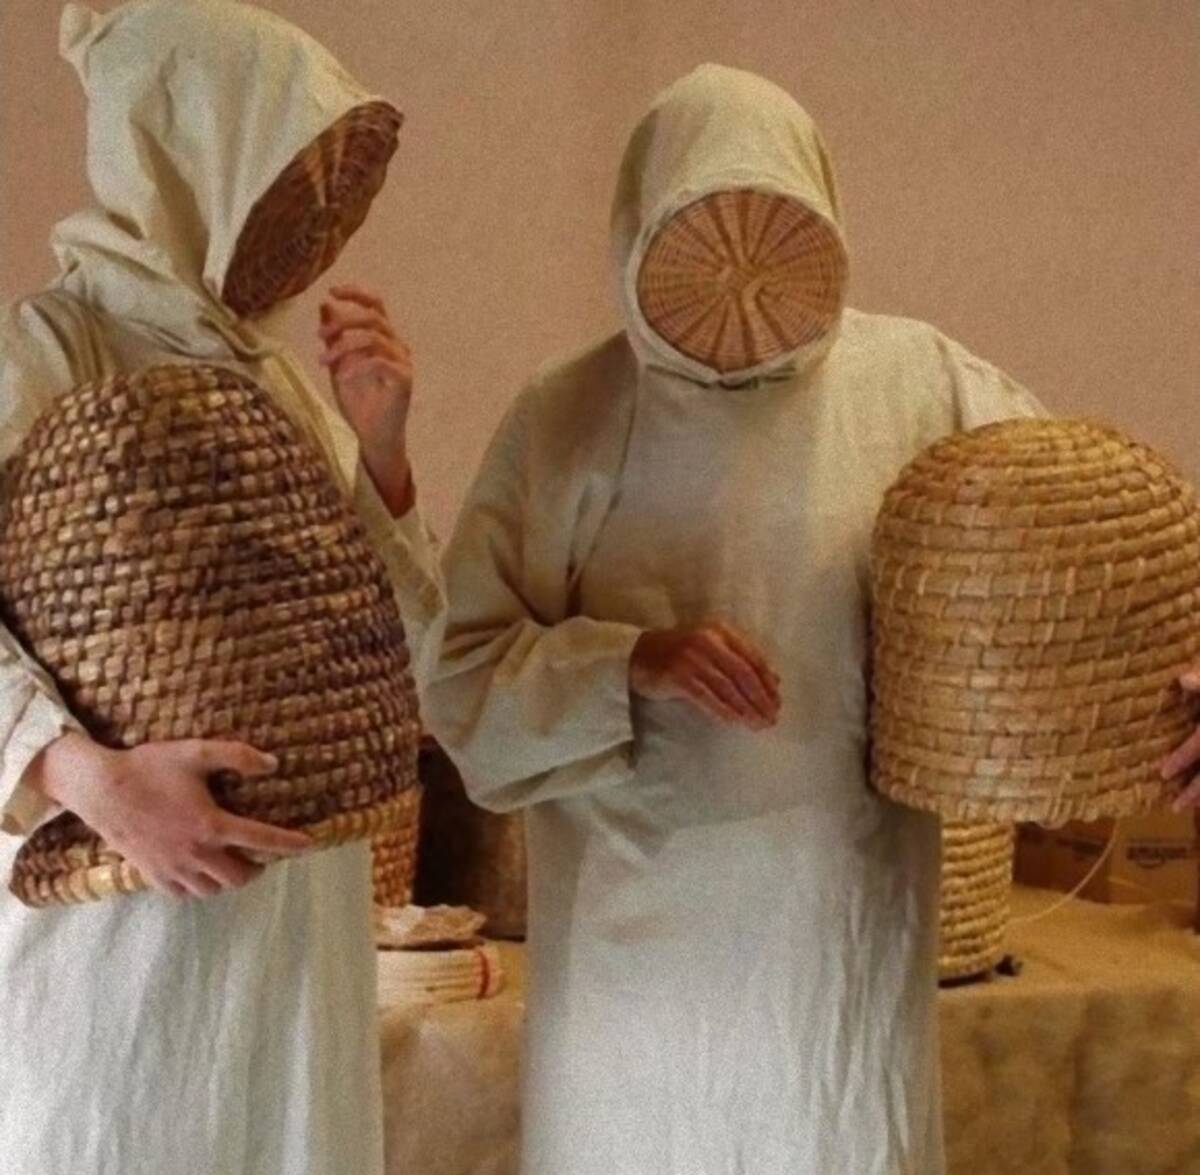 どっかで見たキャラ 中世の養蜂家の防護服がオカルトじみていた件 21年3月21日 エキサイトニュース